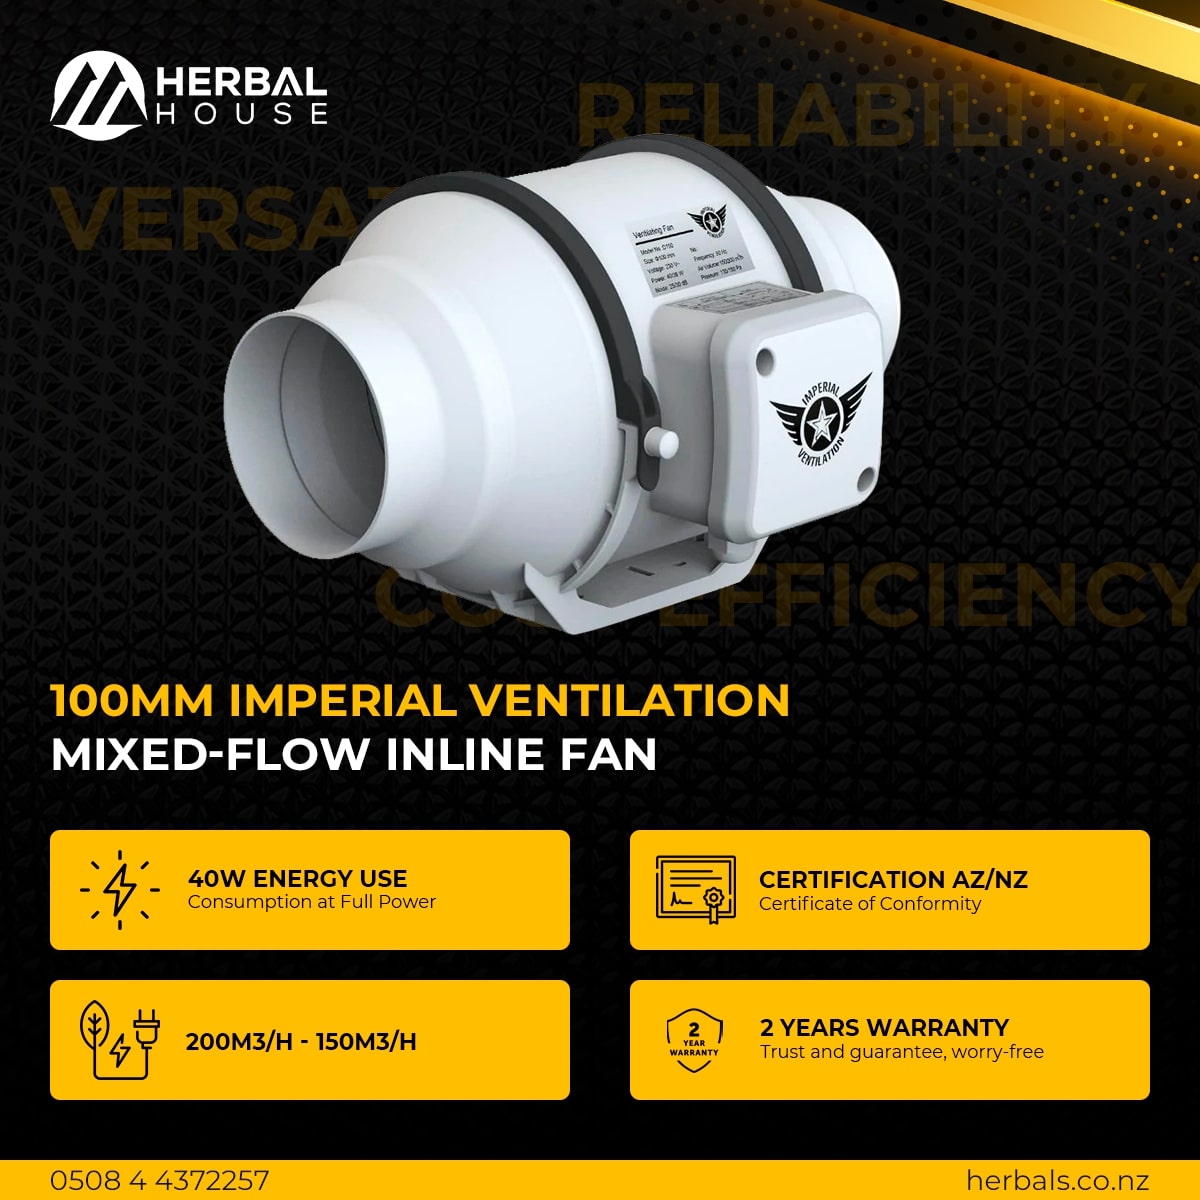 100mm Imperial Ventilation Mixed-Flow Inline Fan specs